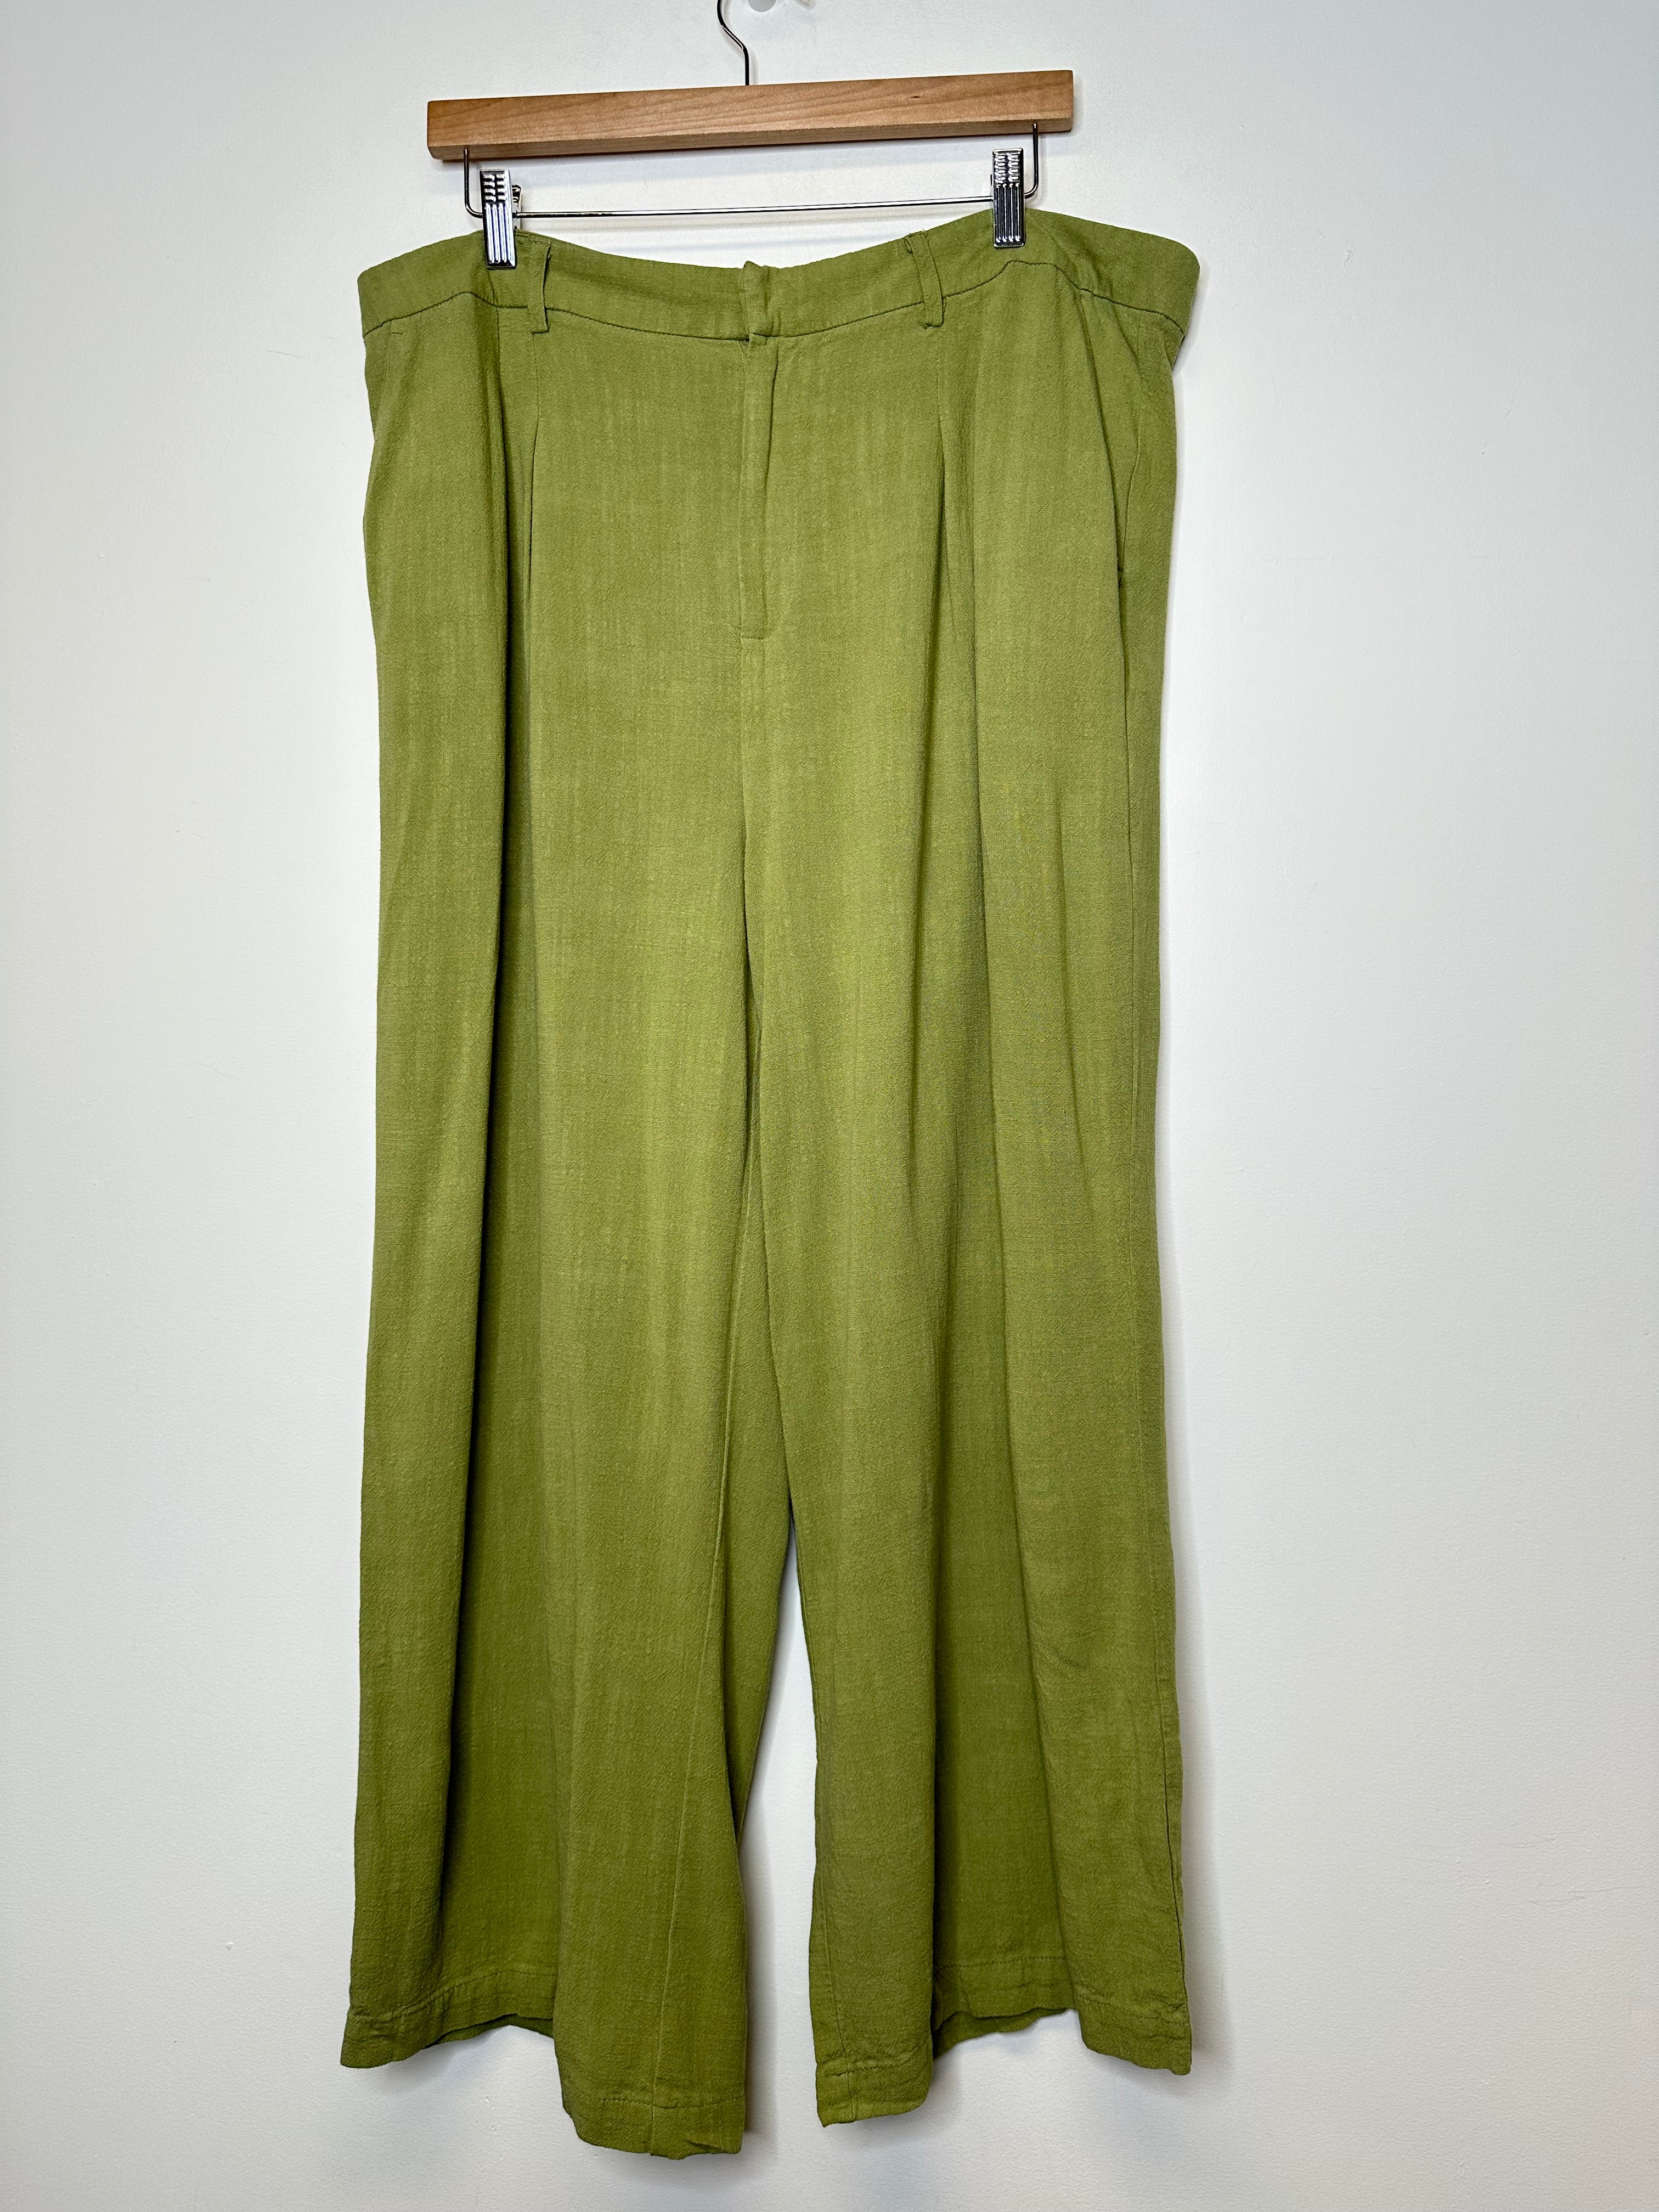 Primark Green Pants - 16